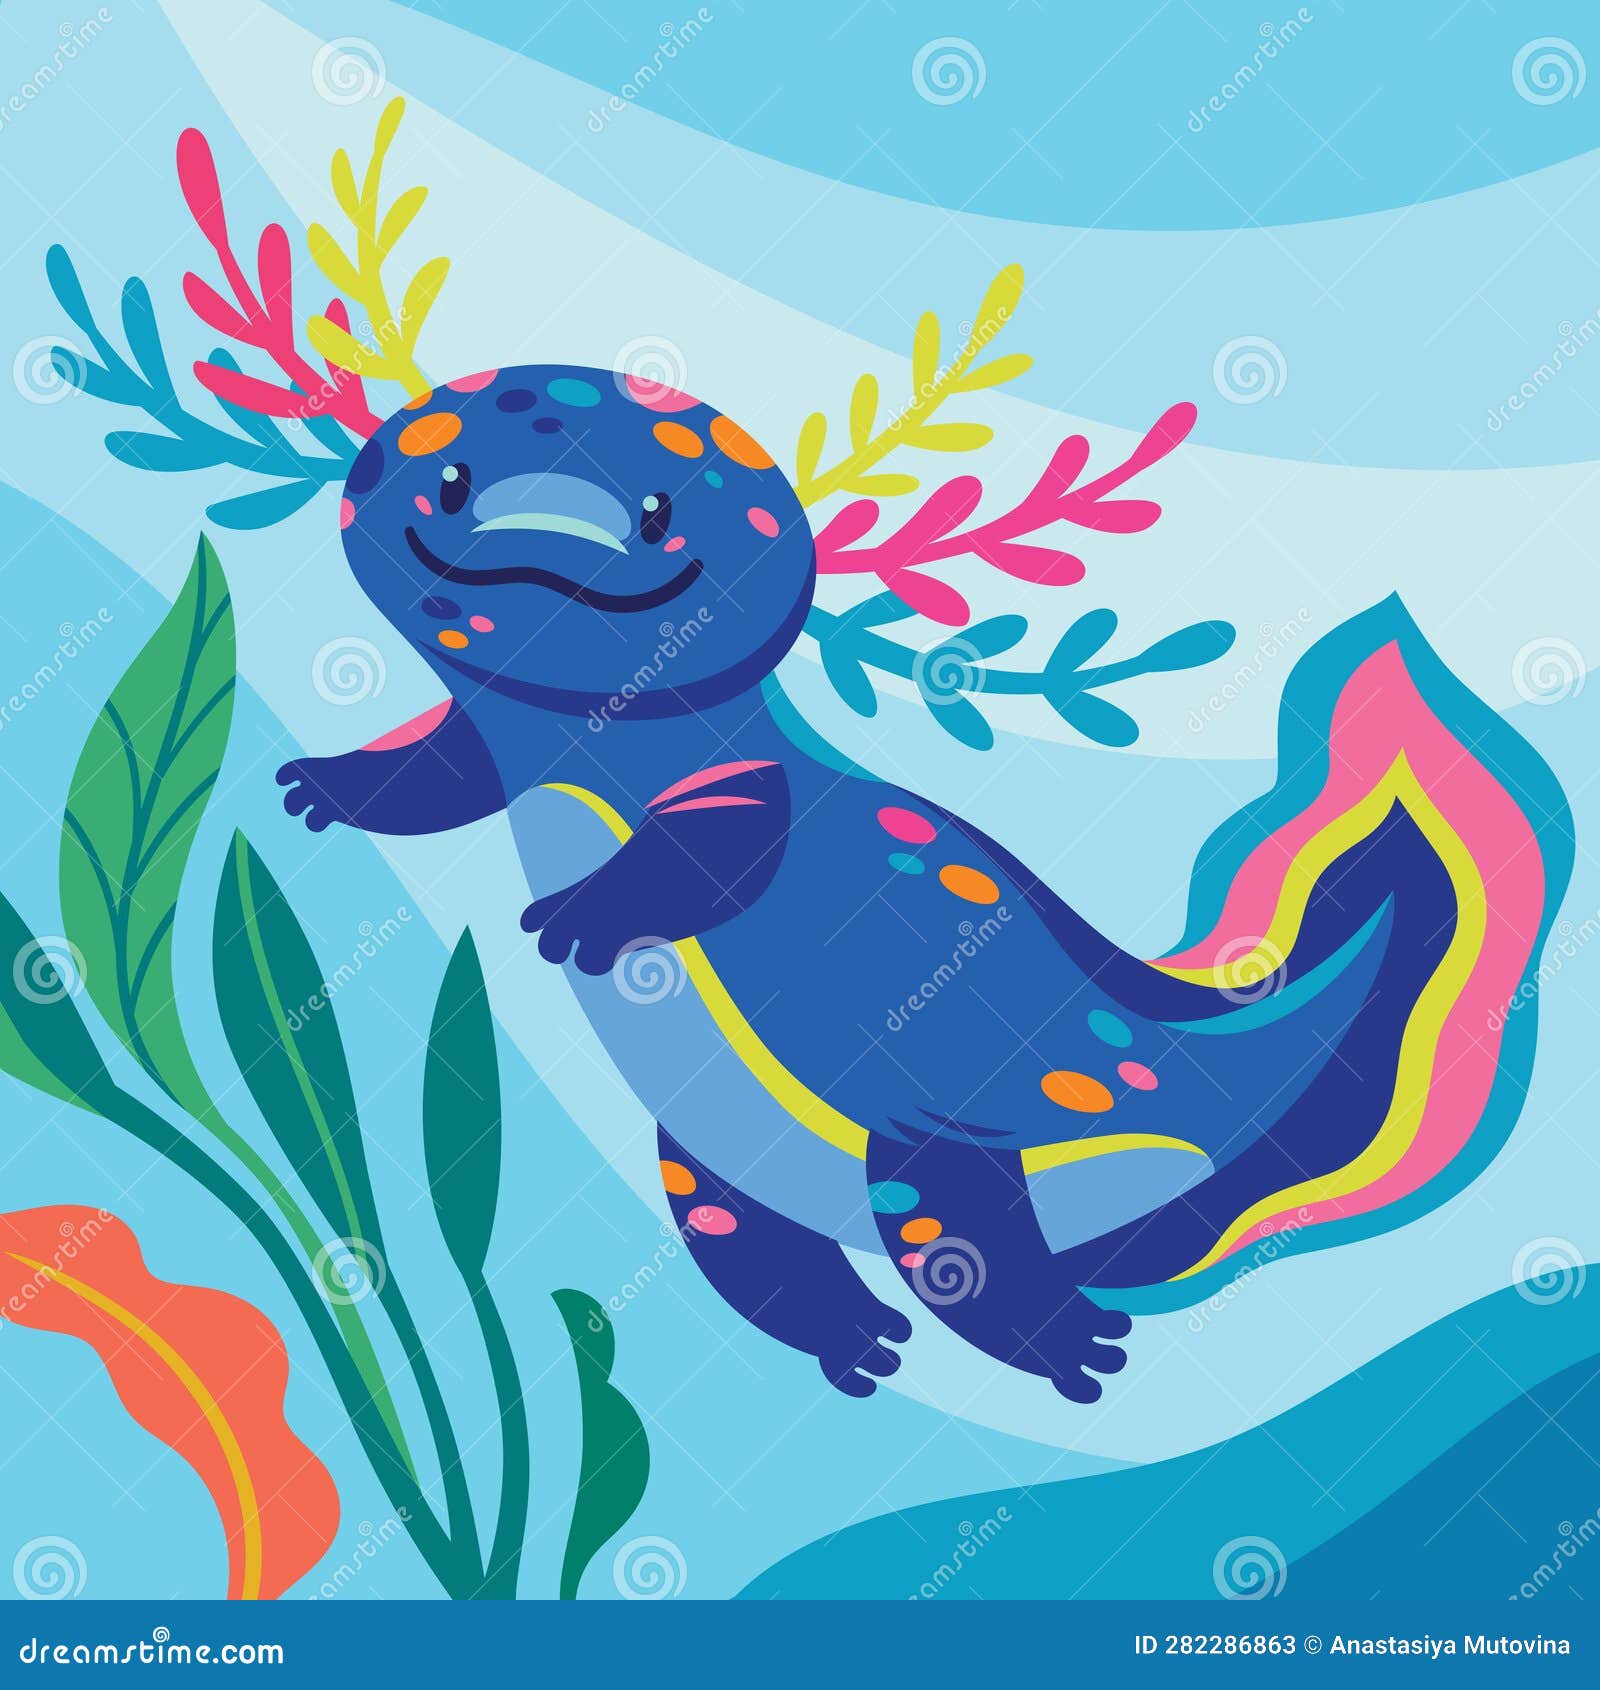 Cute Cartoon Axolotl, Blue Amphibian Creature is Swimming Underwater ...